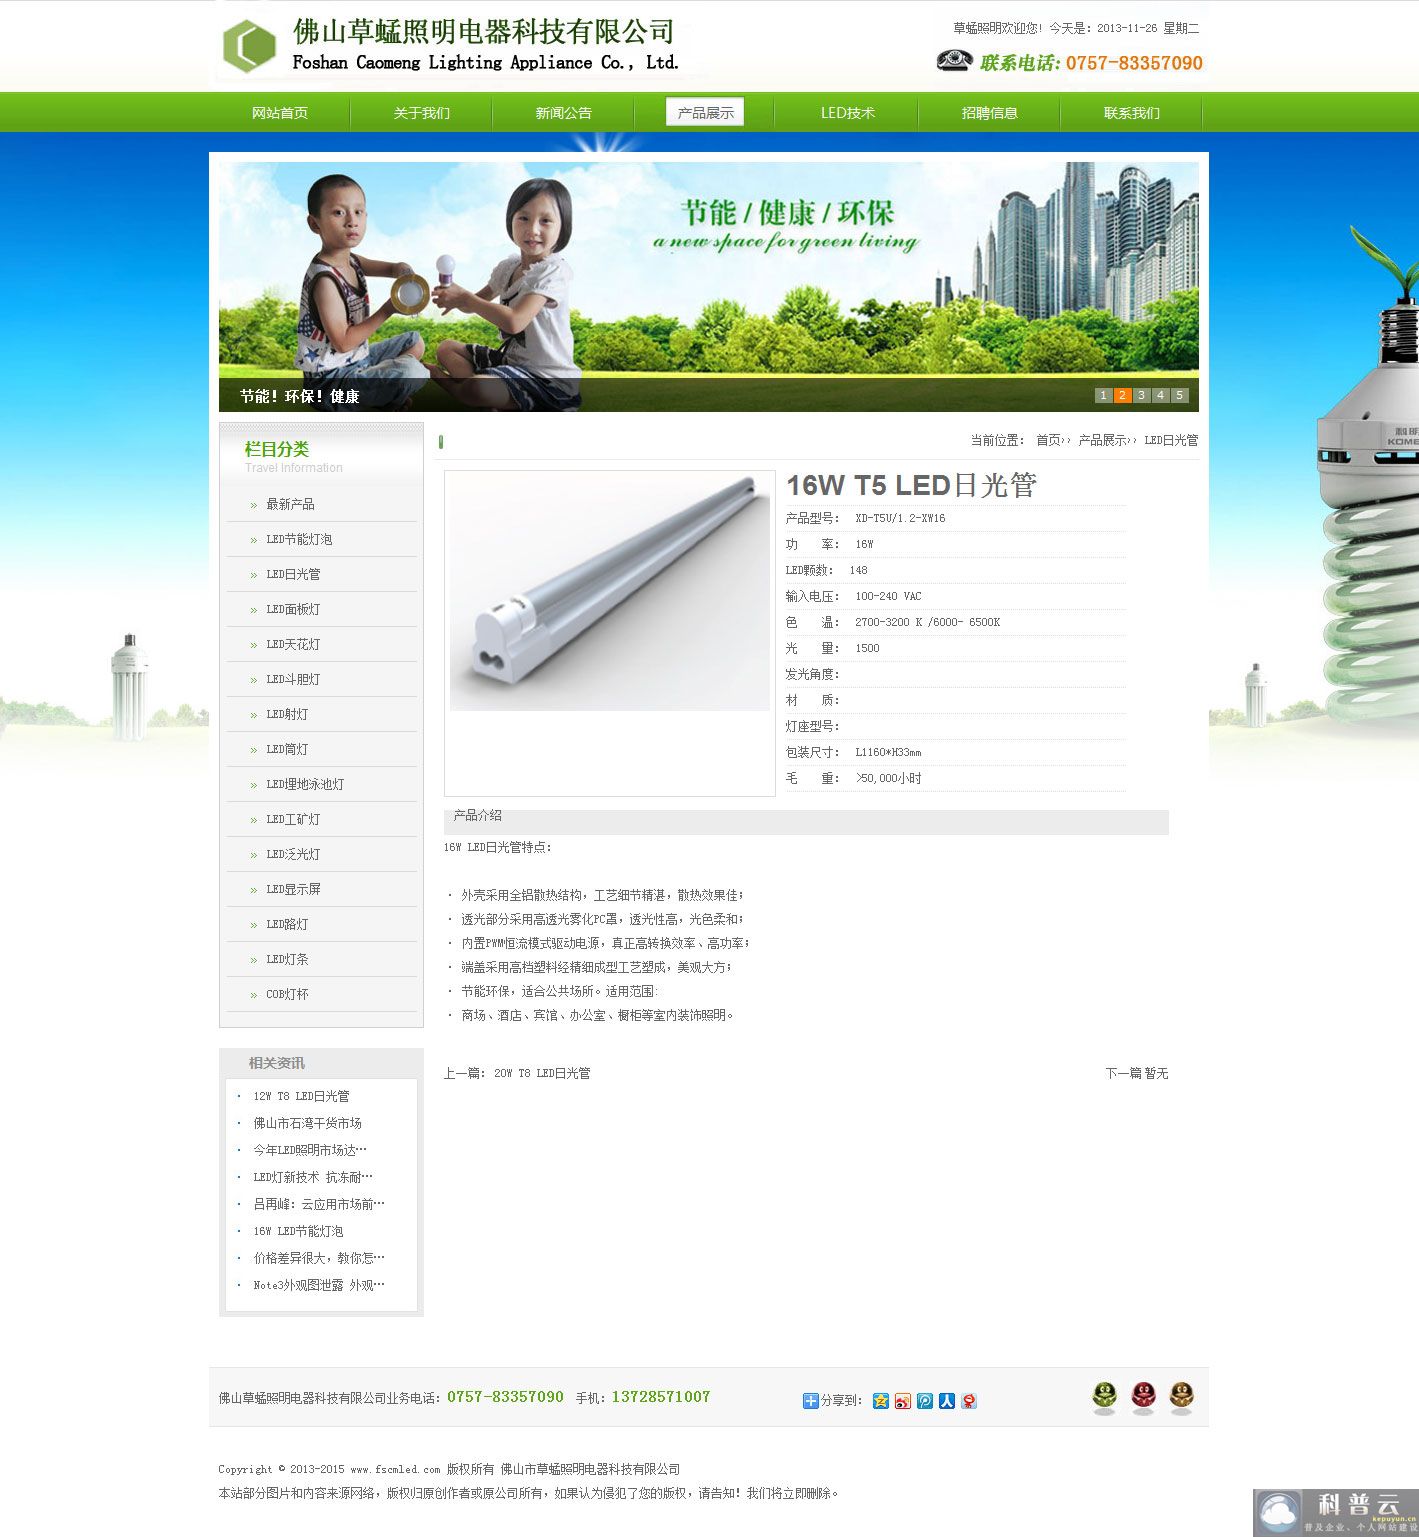 照明电器科技公司网站产品内容页